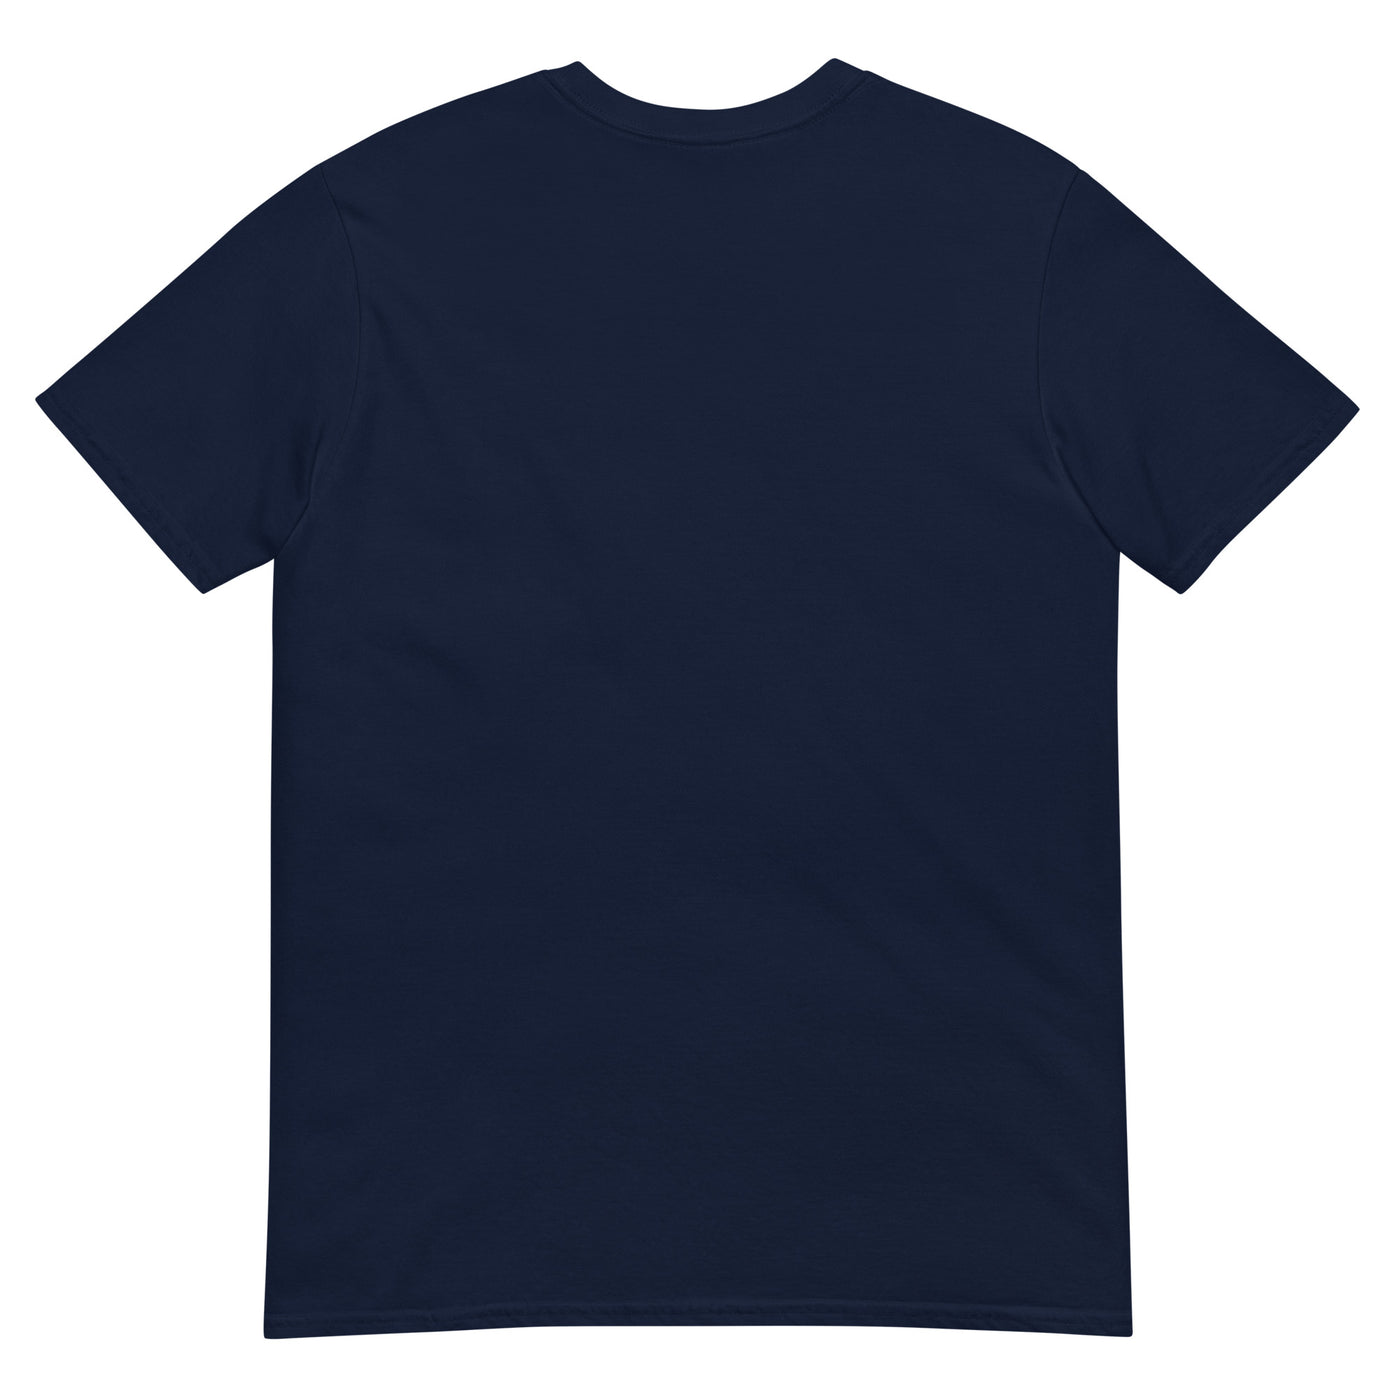 Problem Solved - Mann Klettern - T-Shirt (Unisex) klettern xxx yyy zzz